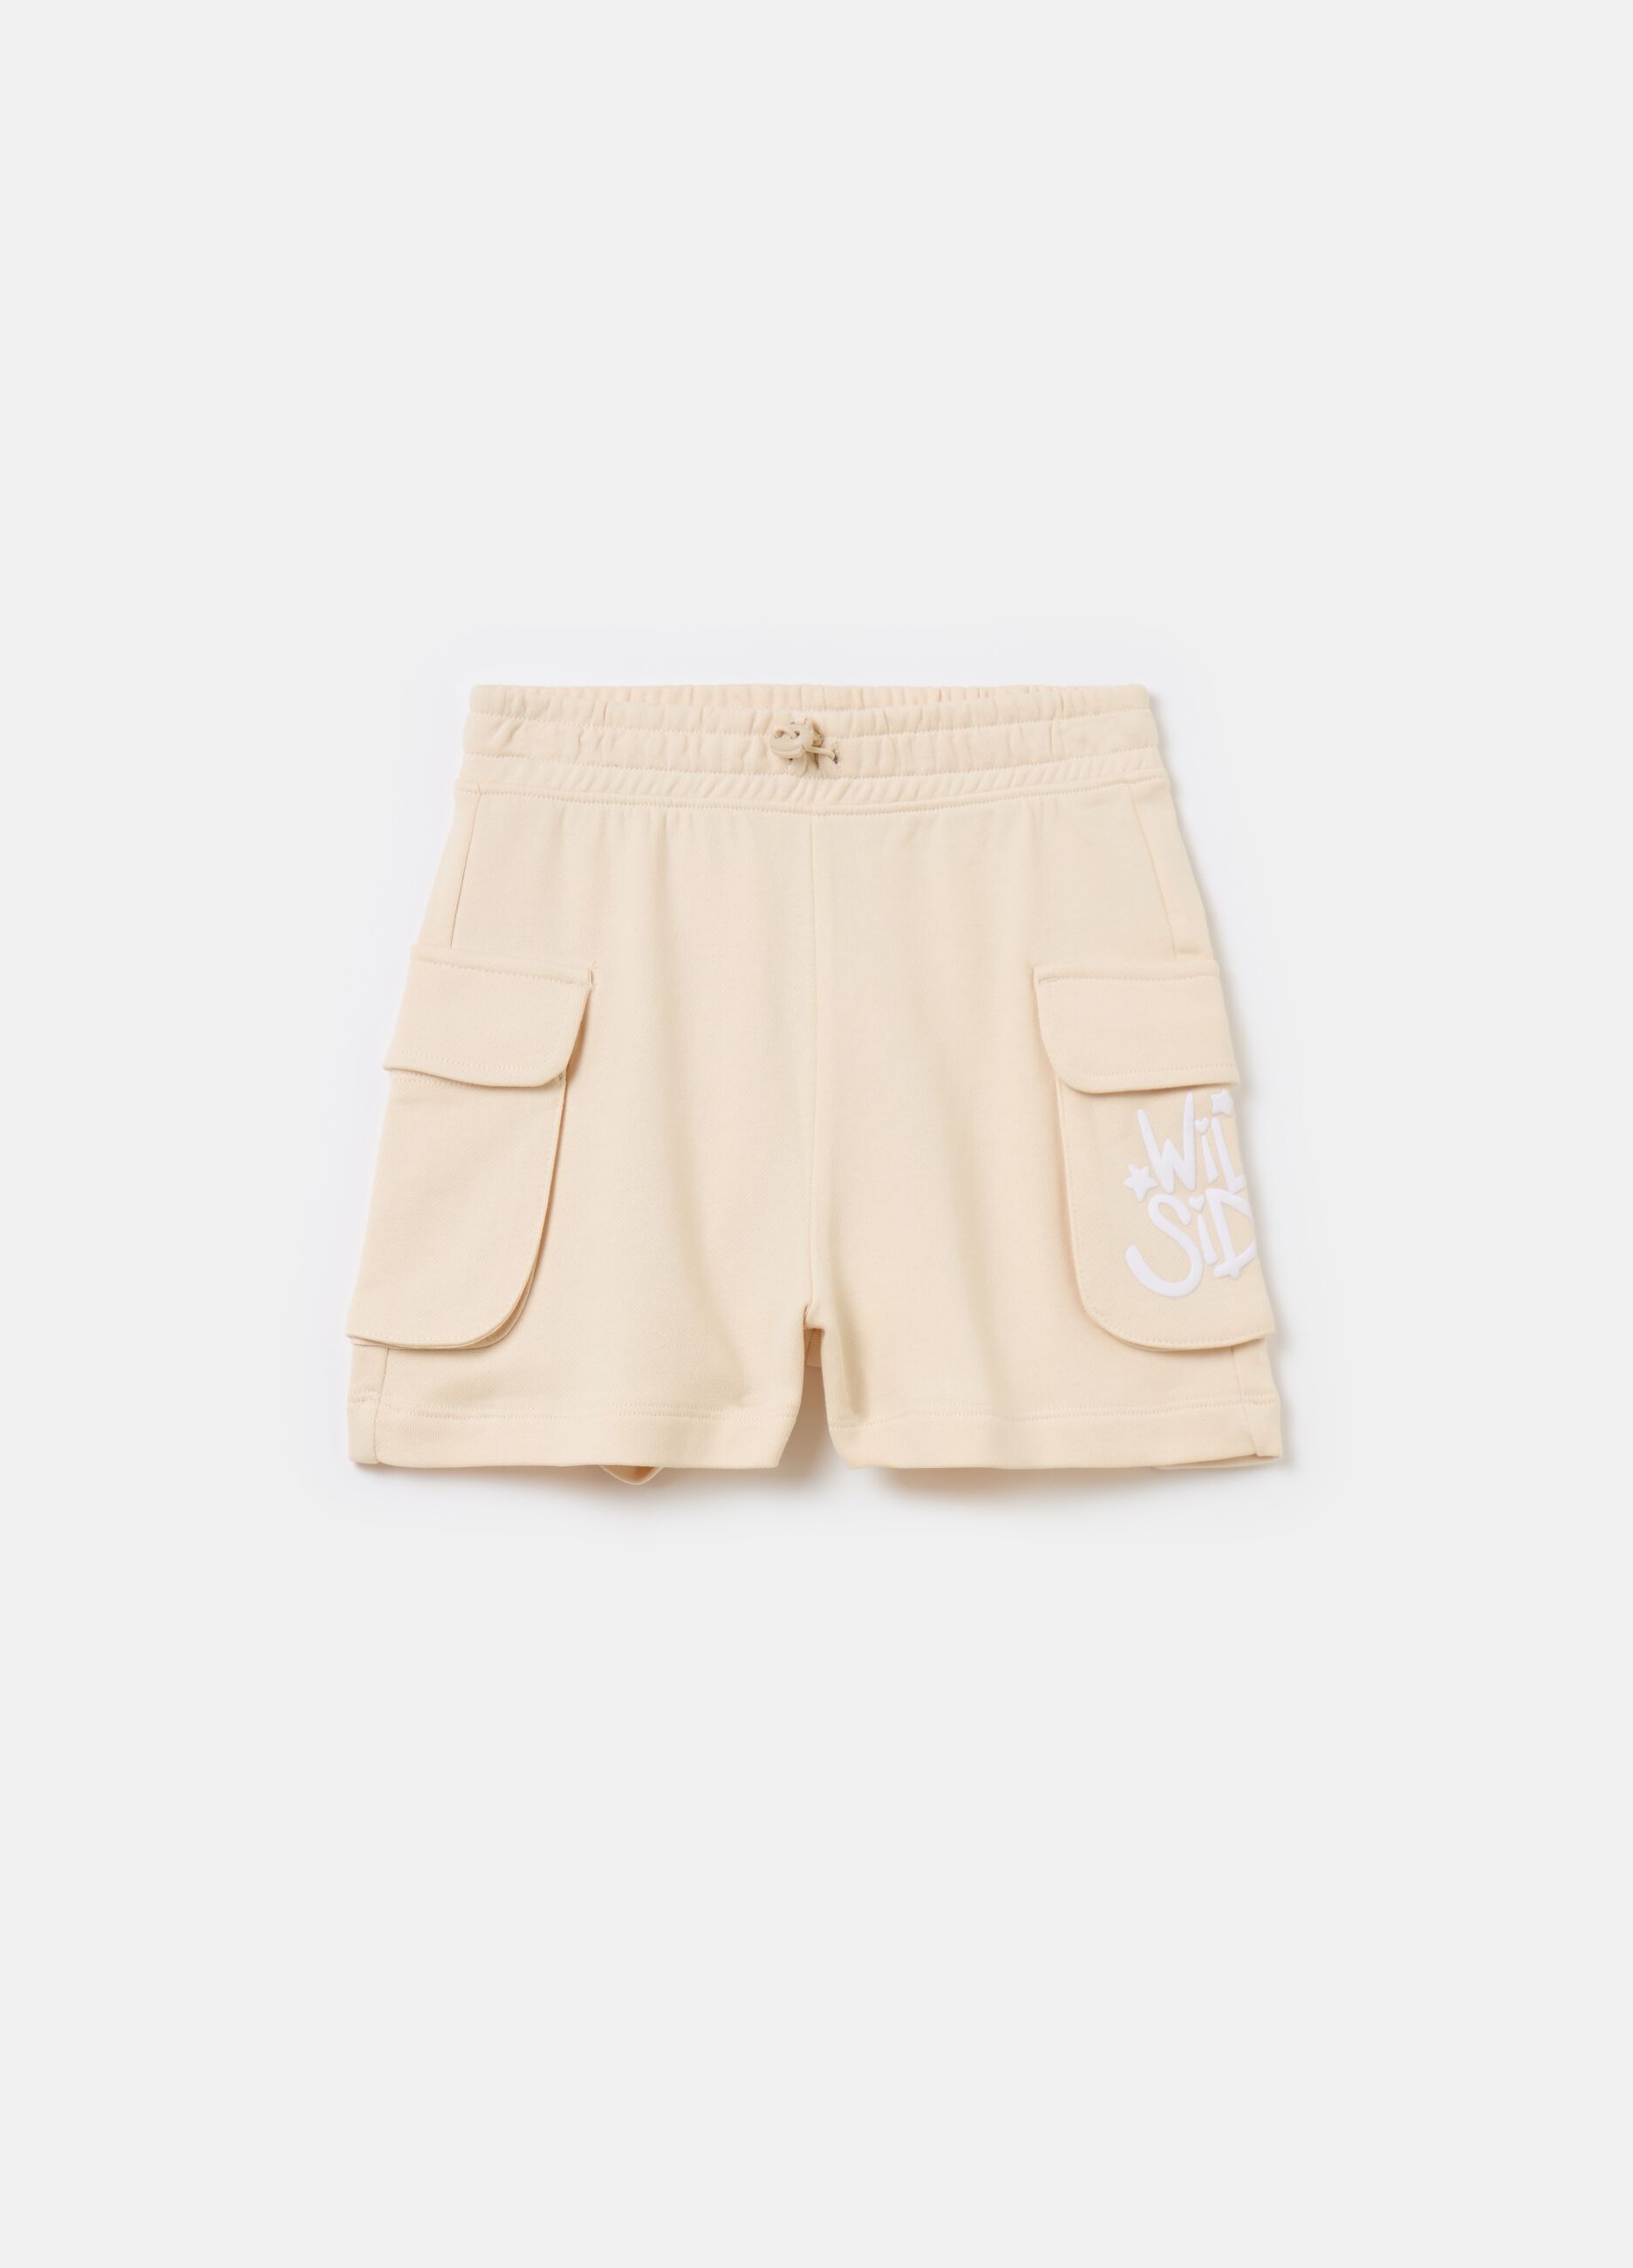 Shorts with drawstring and pockets